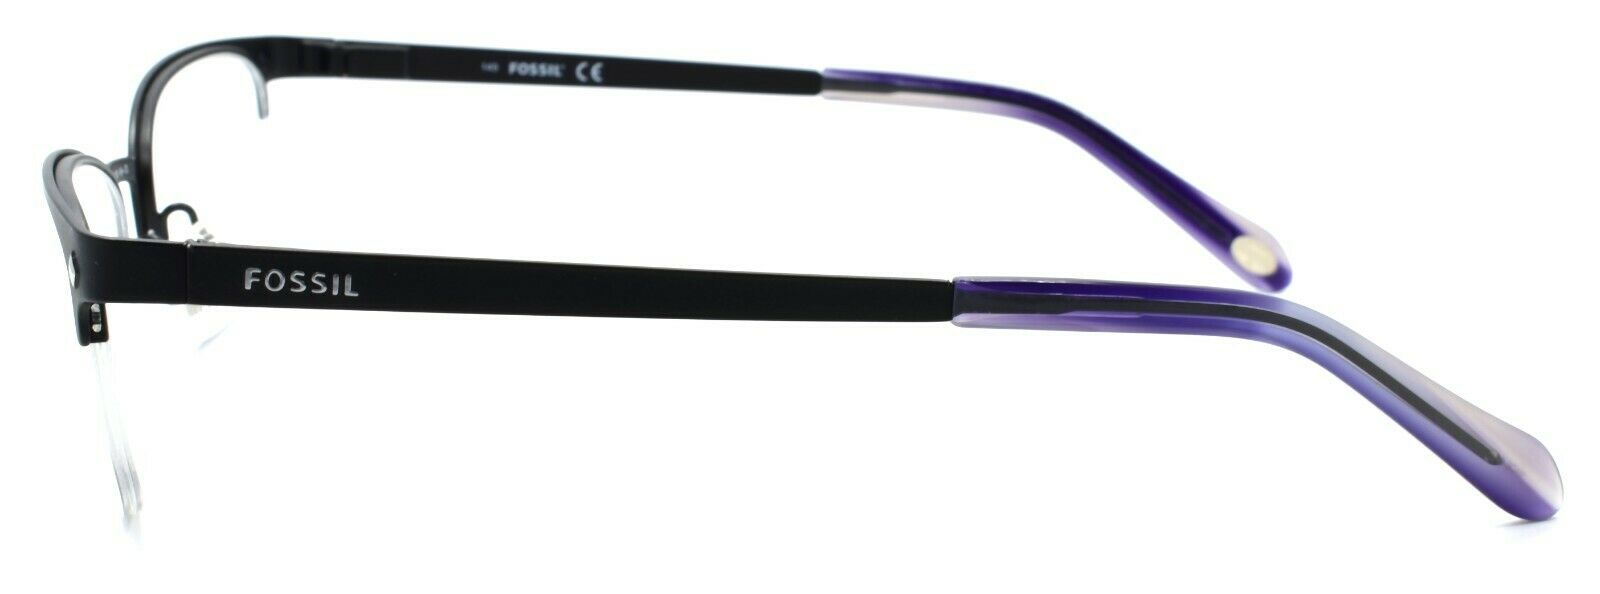 3-Fossil Will 0RX1 Men's Eyeglasses Frames Half-rim 52-19-145 Matte Black-716737556764-IKSpecs